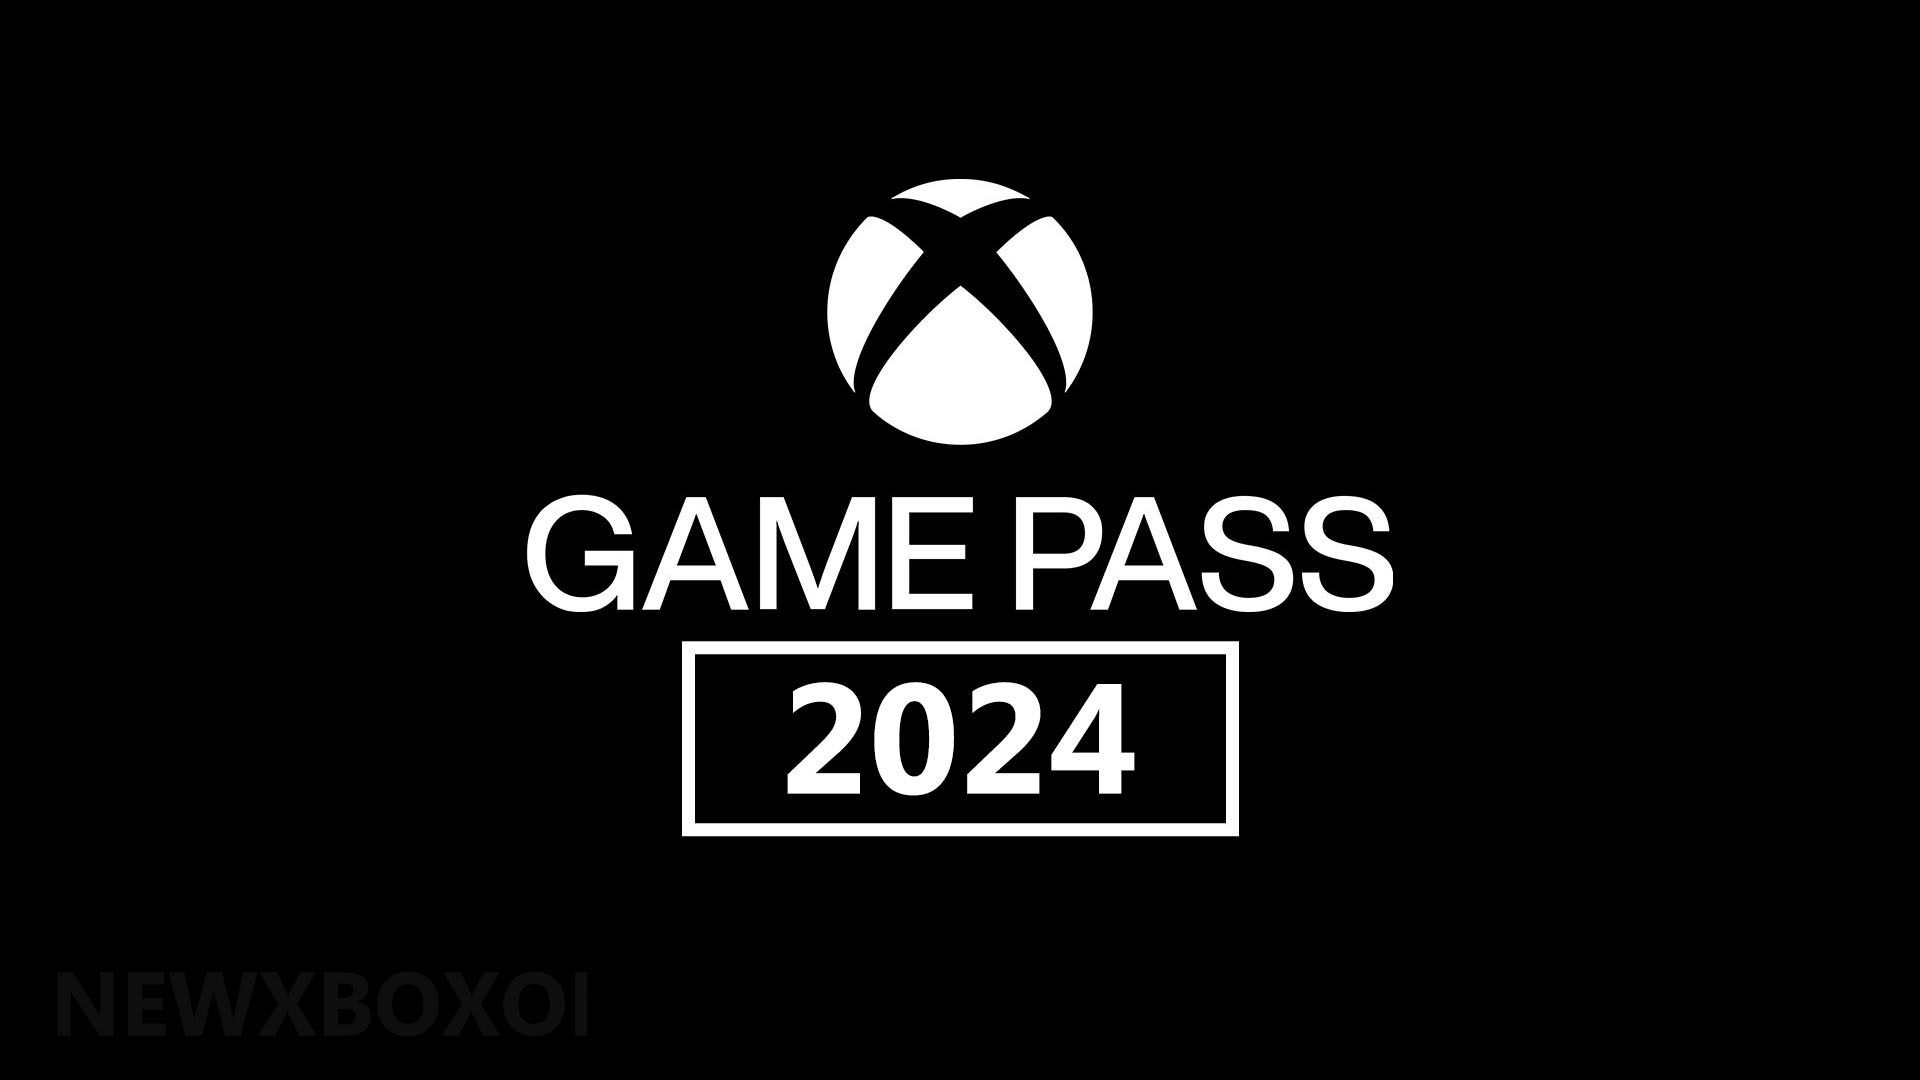 Эти 40+ игр выйдут в Game Pass сразу после релиза в 2024 году (UPD)